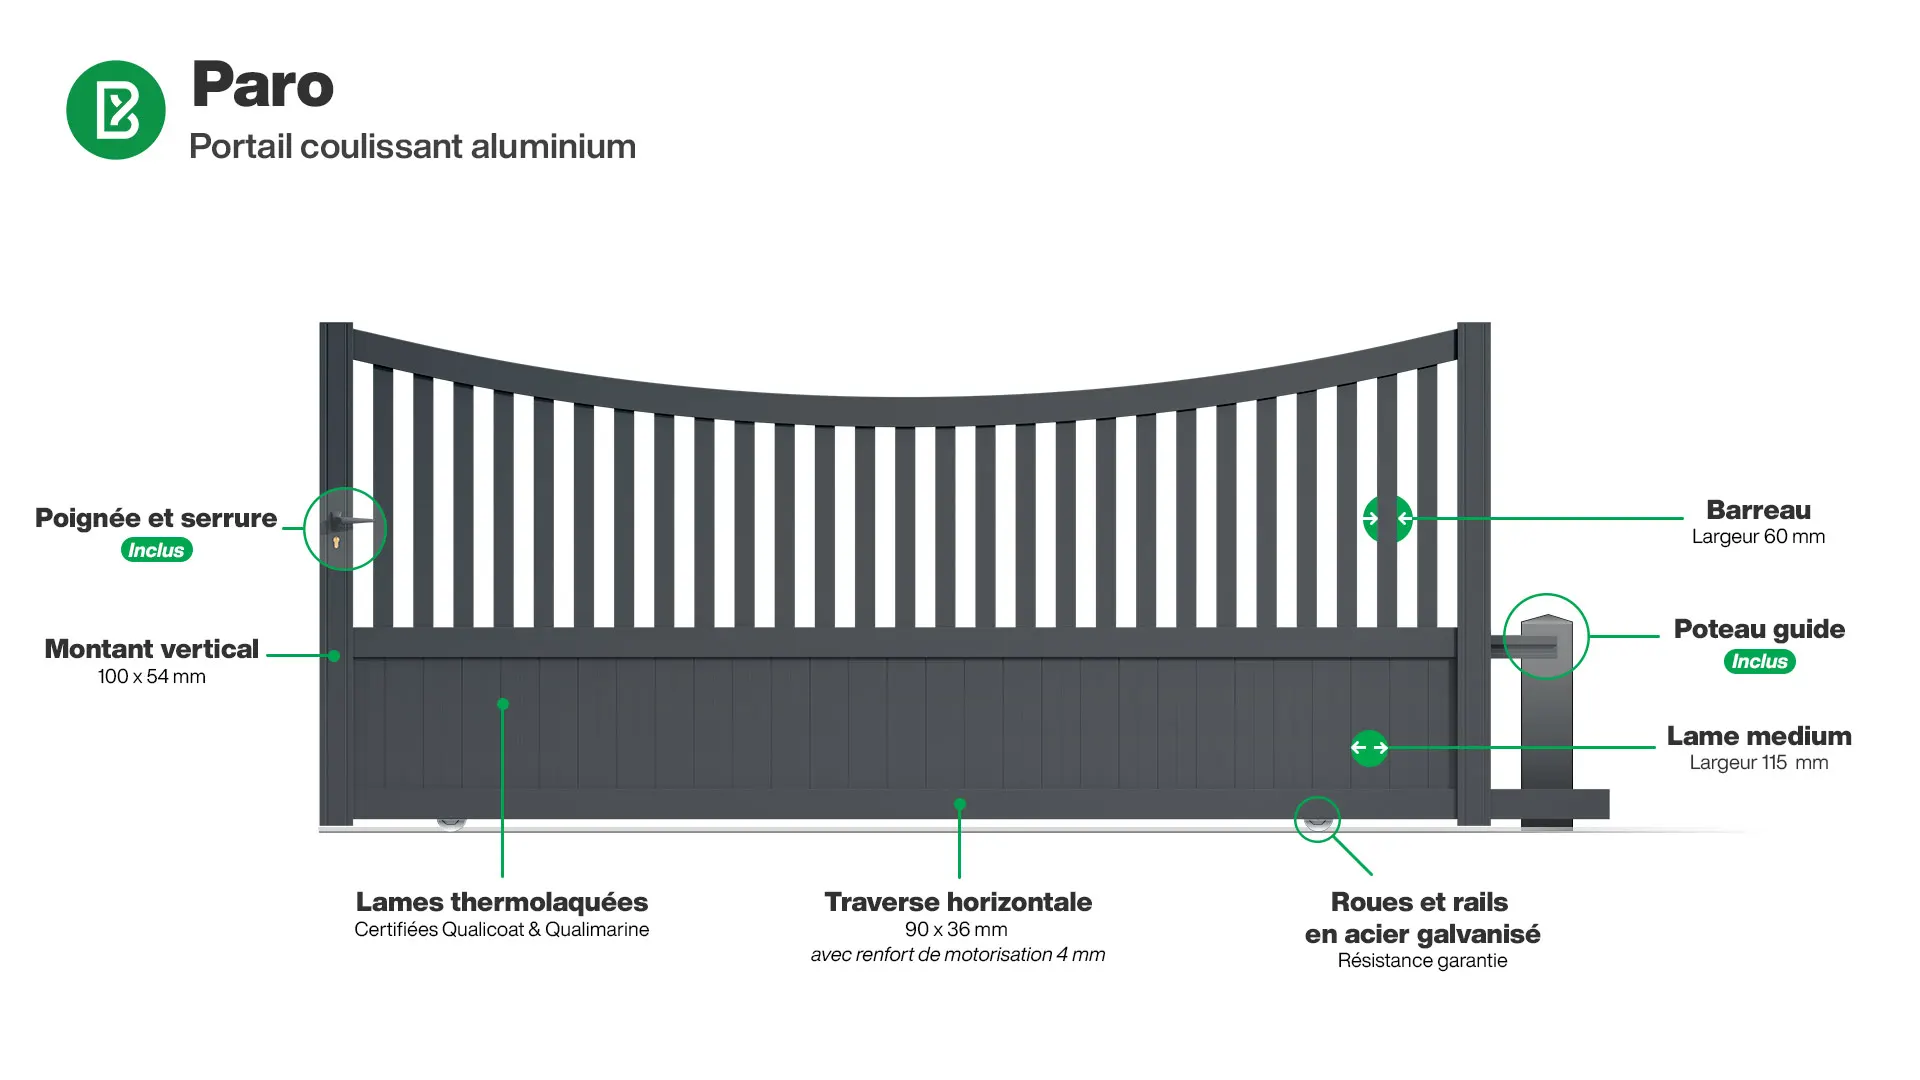 Portail : Infographie d'un portail coulissant aluminium modèle PARO